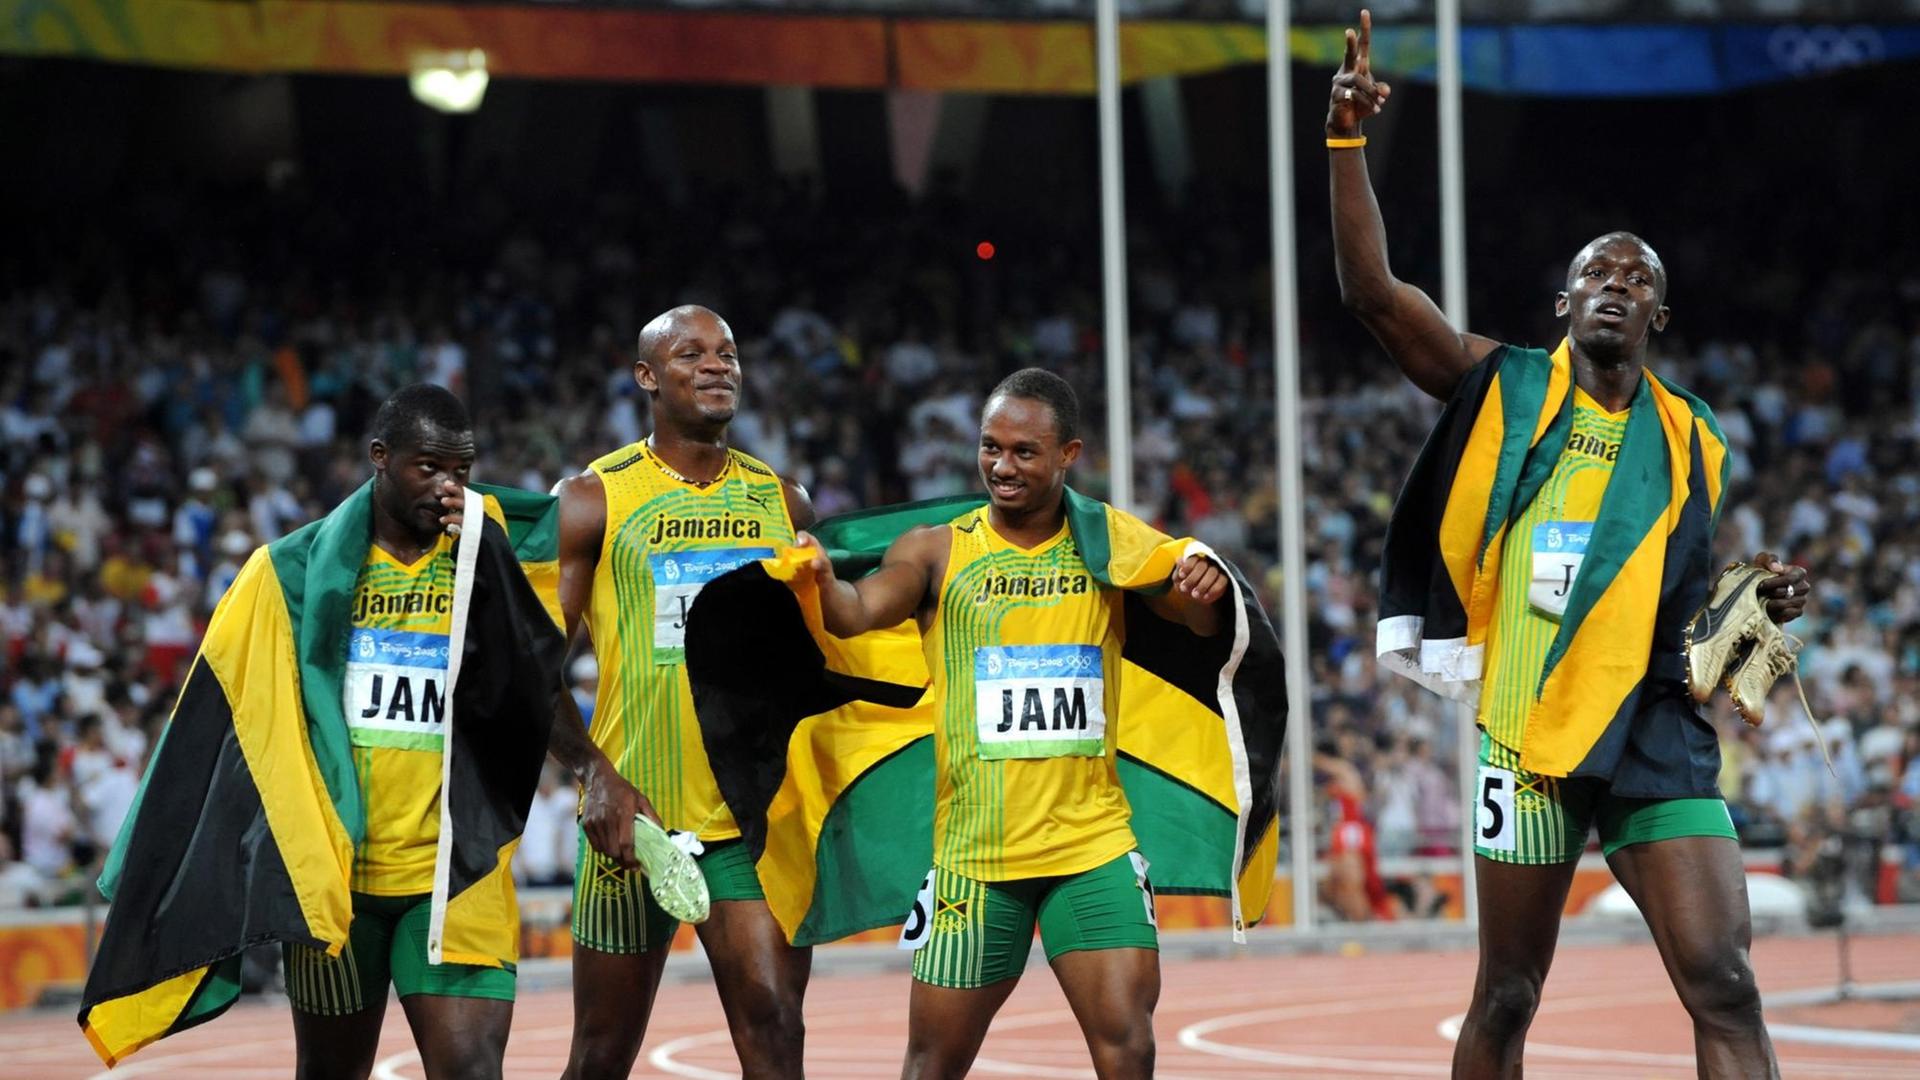 Olympia in Peking 2008 - die jamaikanische 4x100-Meter-Staffel mit Nesta Carter, Asafa Powell, Michael Frater und Usain Bolt nach dem Finallauf